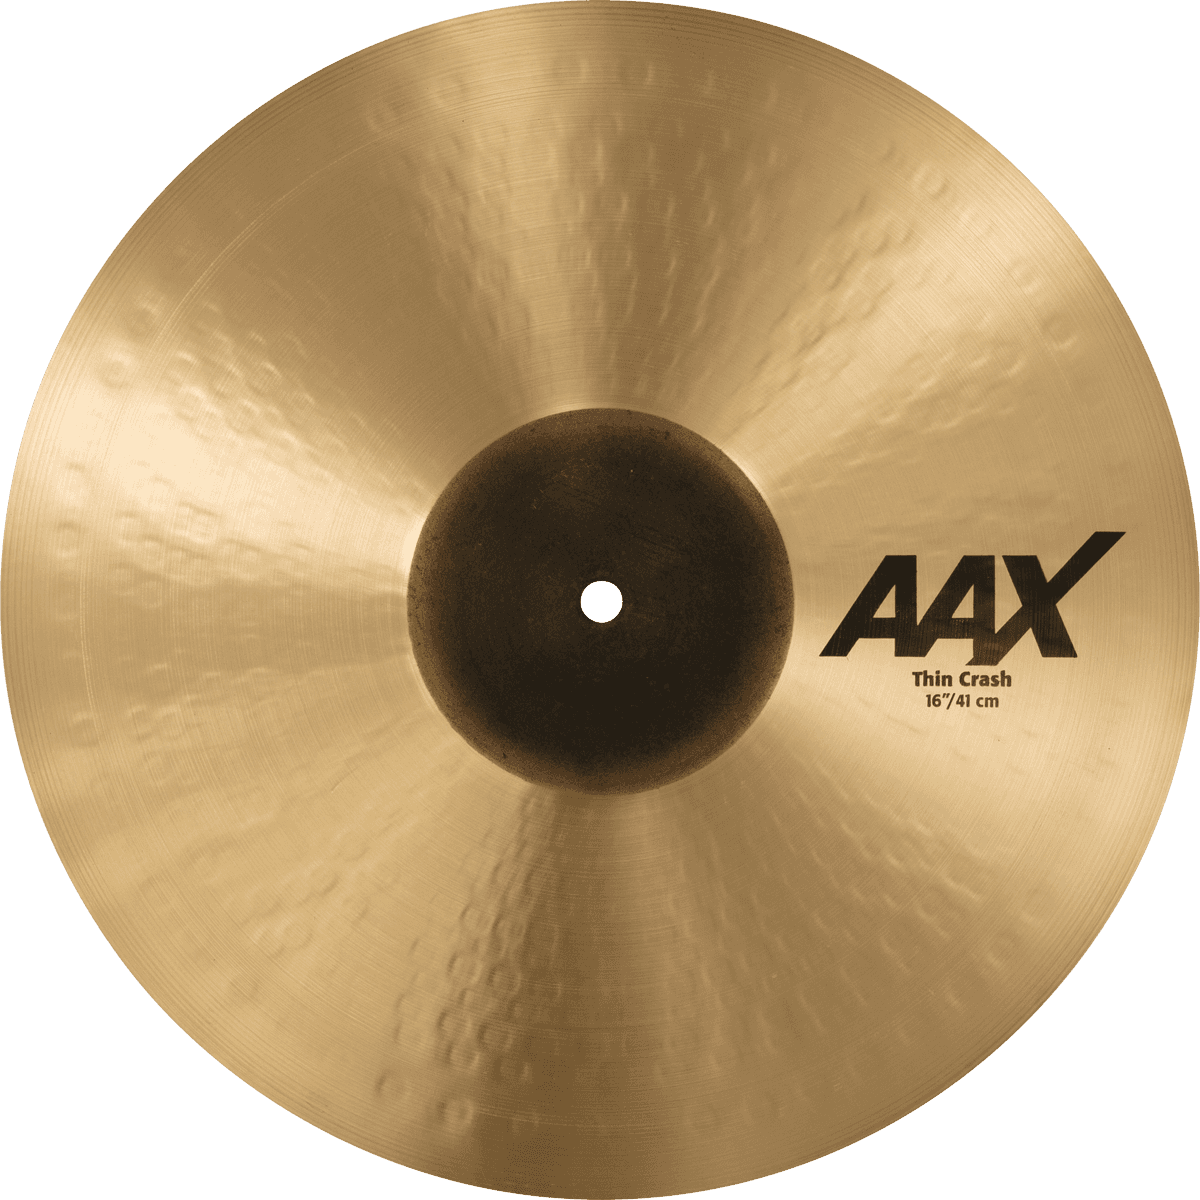 Sabian Aax Crash Thin 16 - Crash cymbal - Variation 1